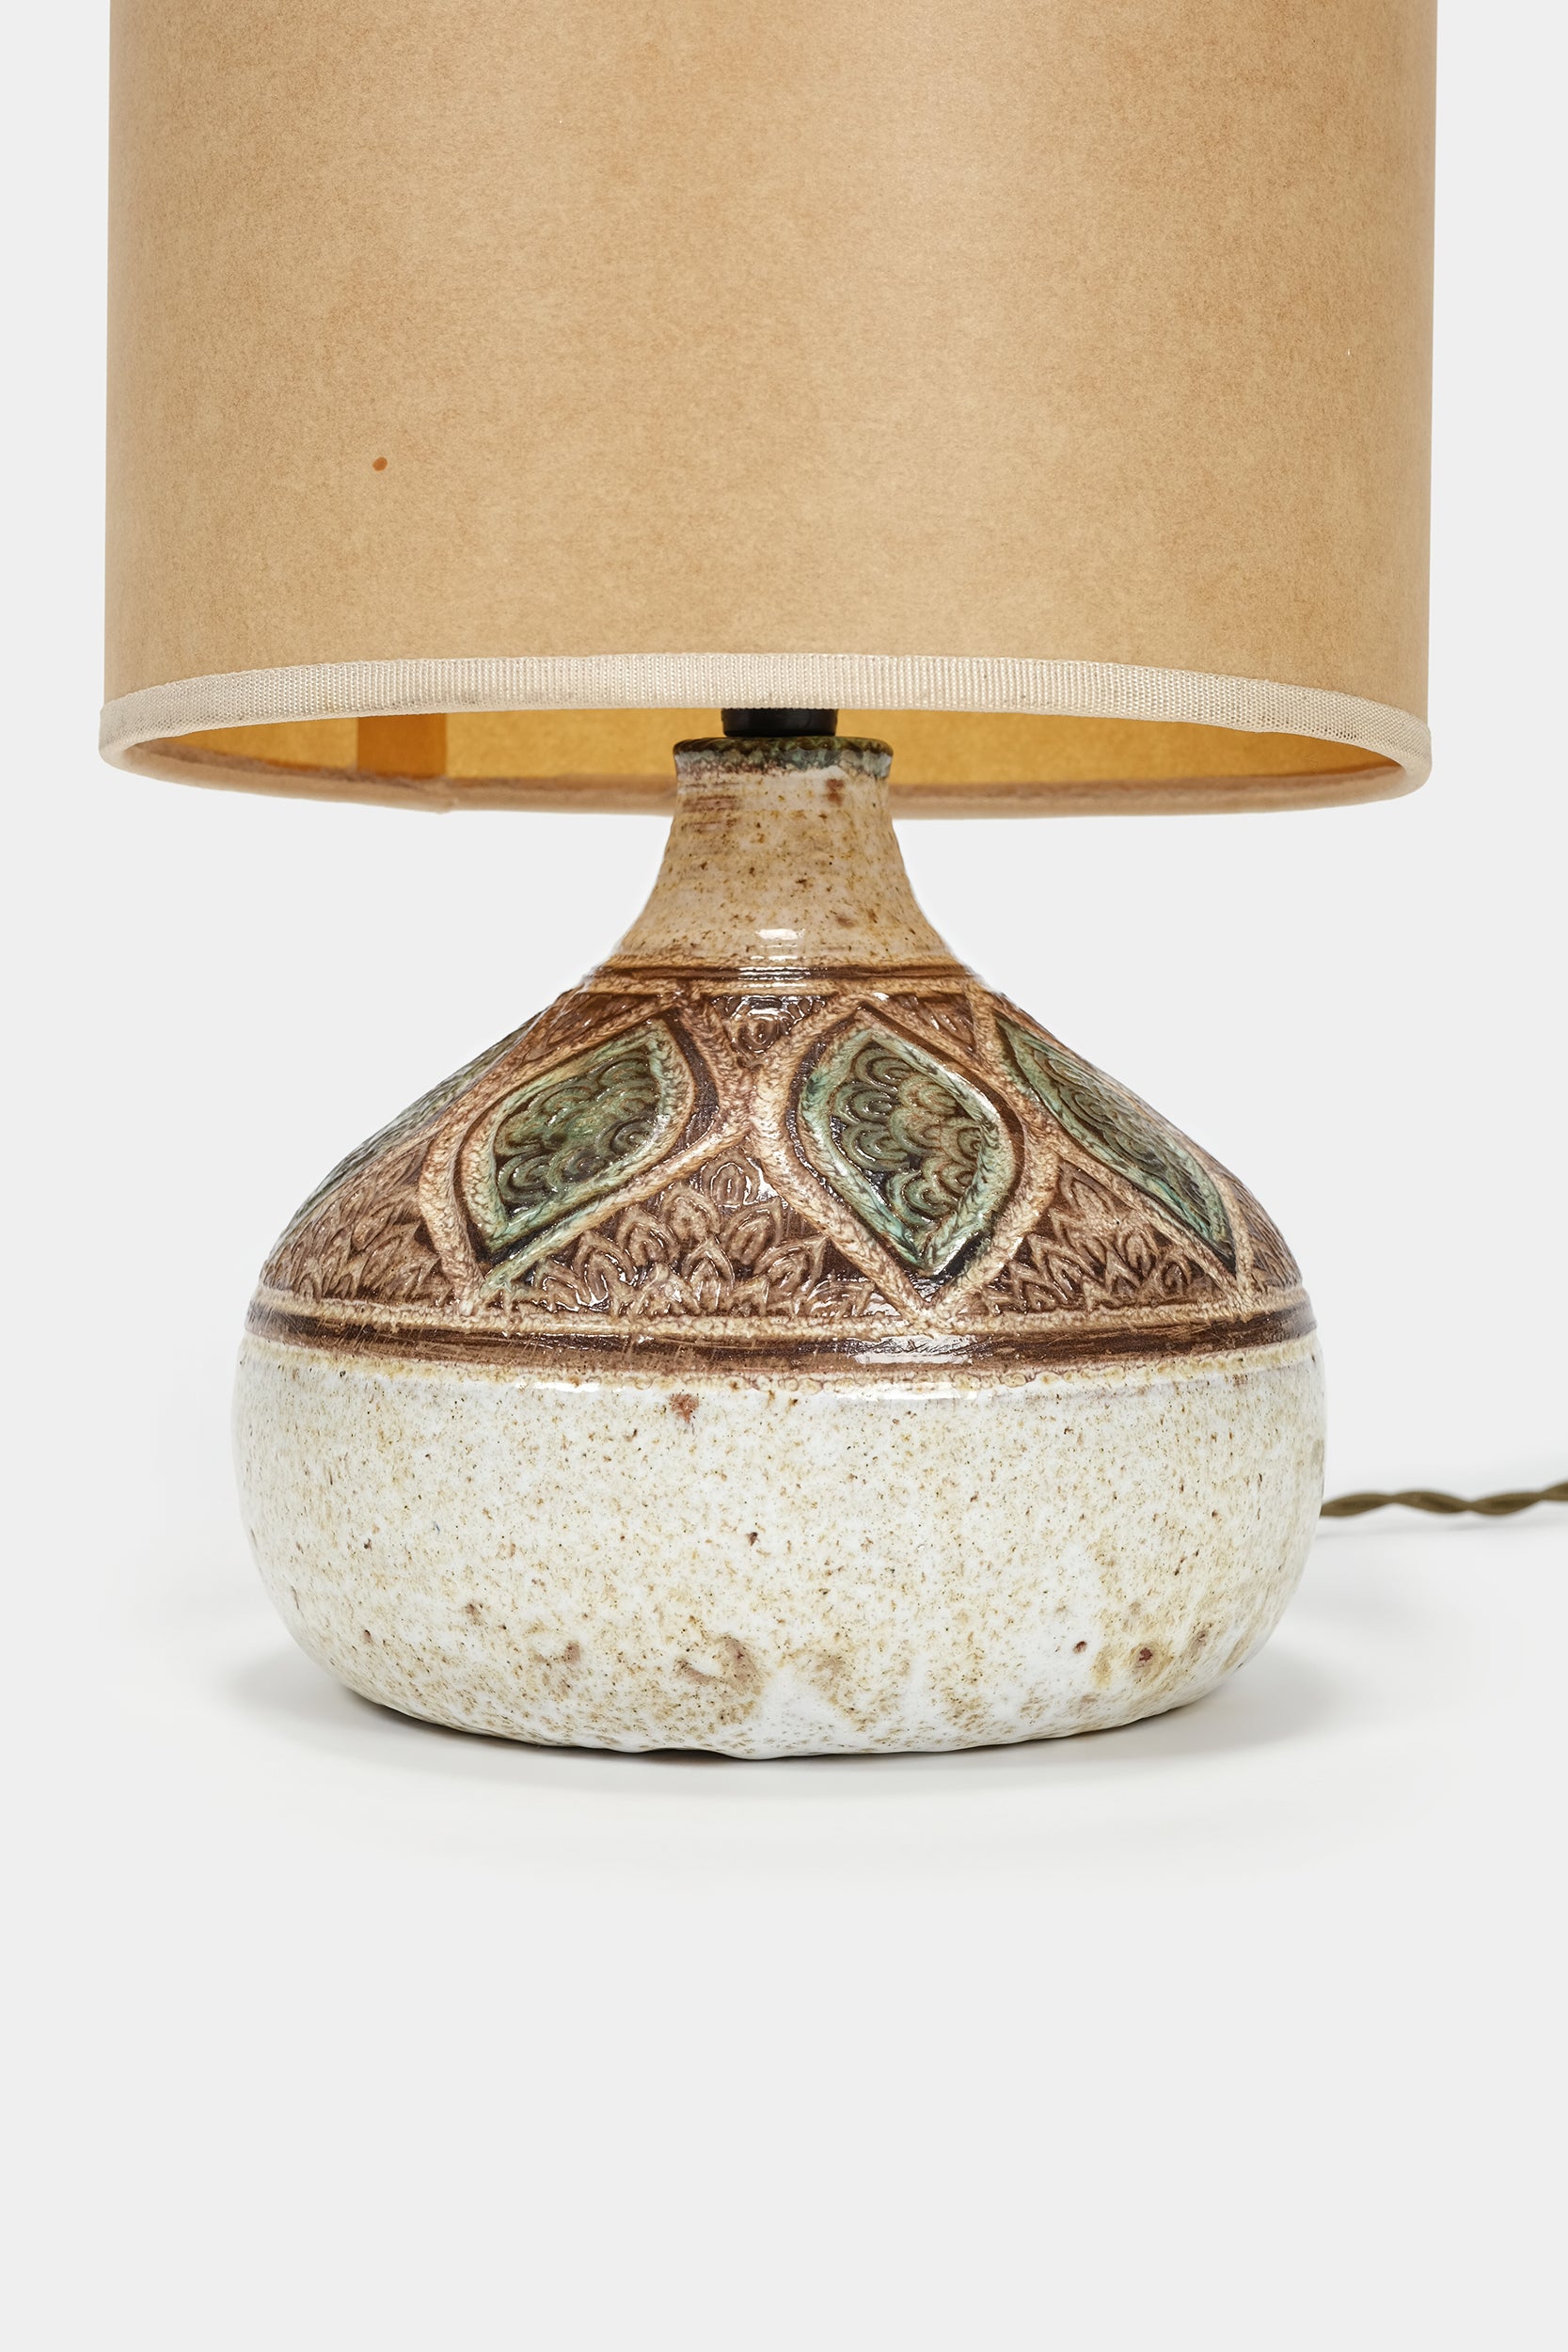 Marcel Giraud, Keramik Lampe, Vallauris, Frankreich, 60er